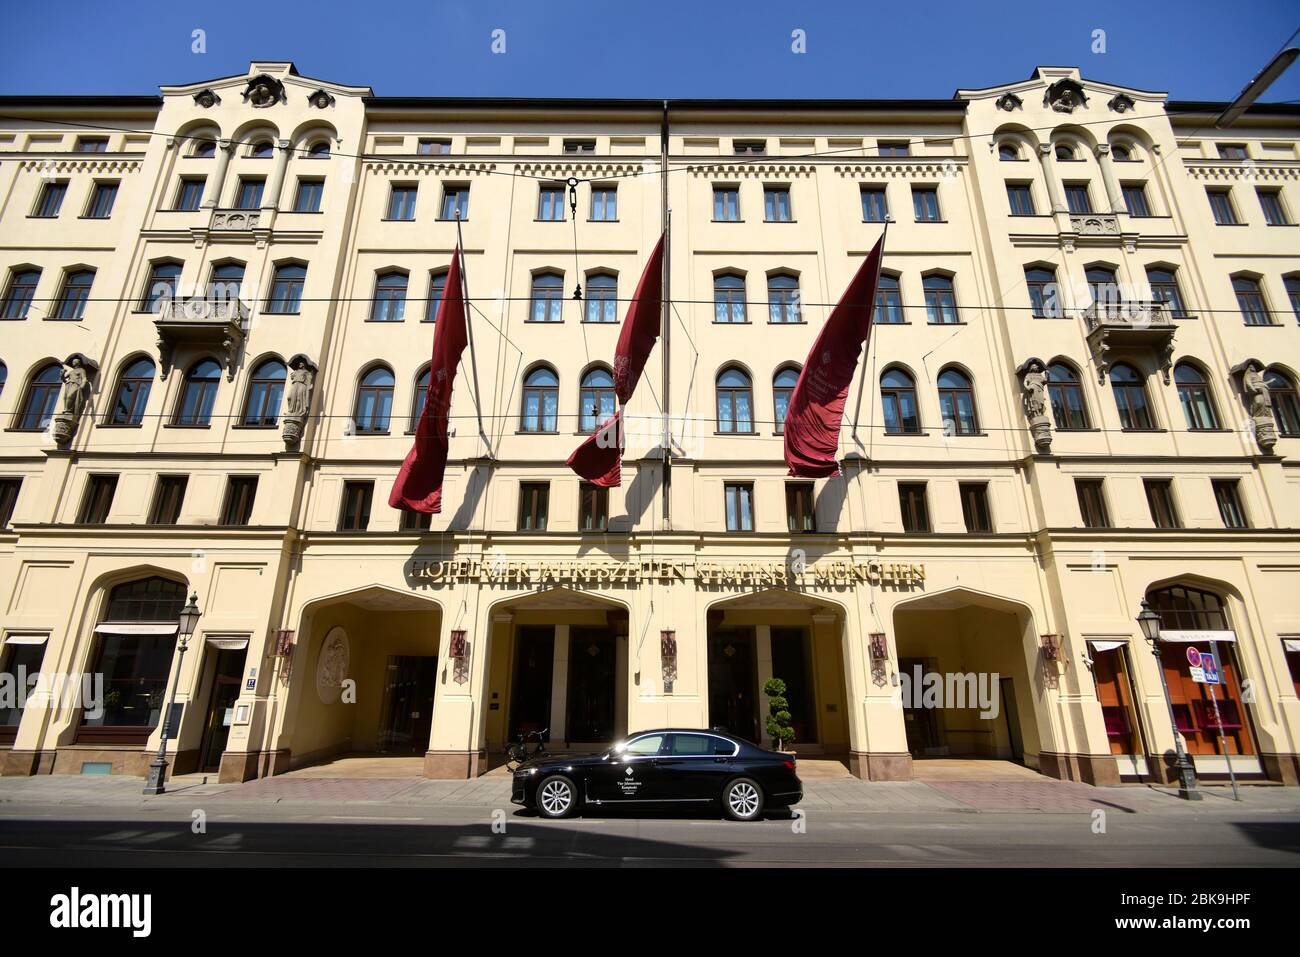 Hotel Vier Jahreszeiten geschlossen, CoronaKrise, Old Town, Munich, Upper Bavaria, Bavaria, Germany Stock Photo